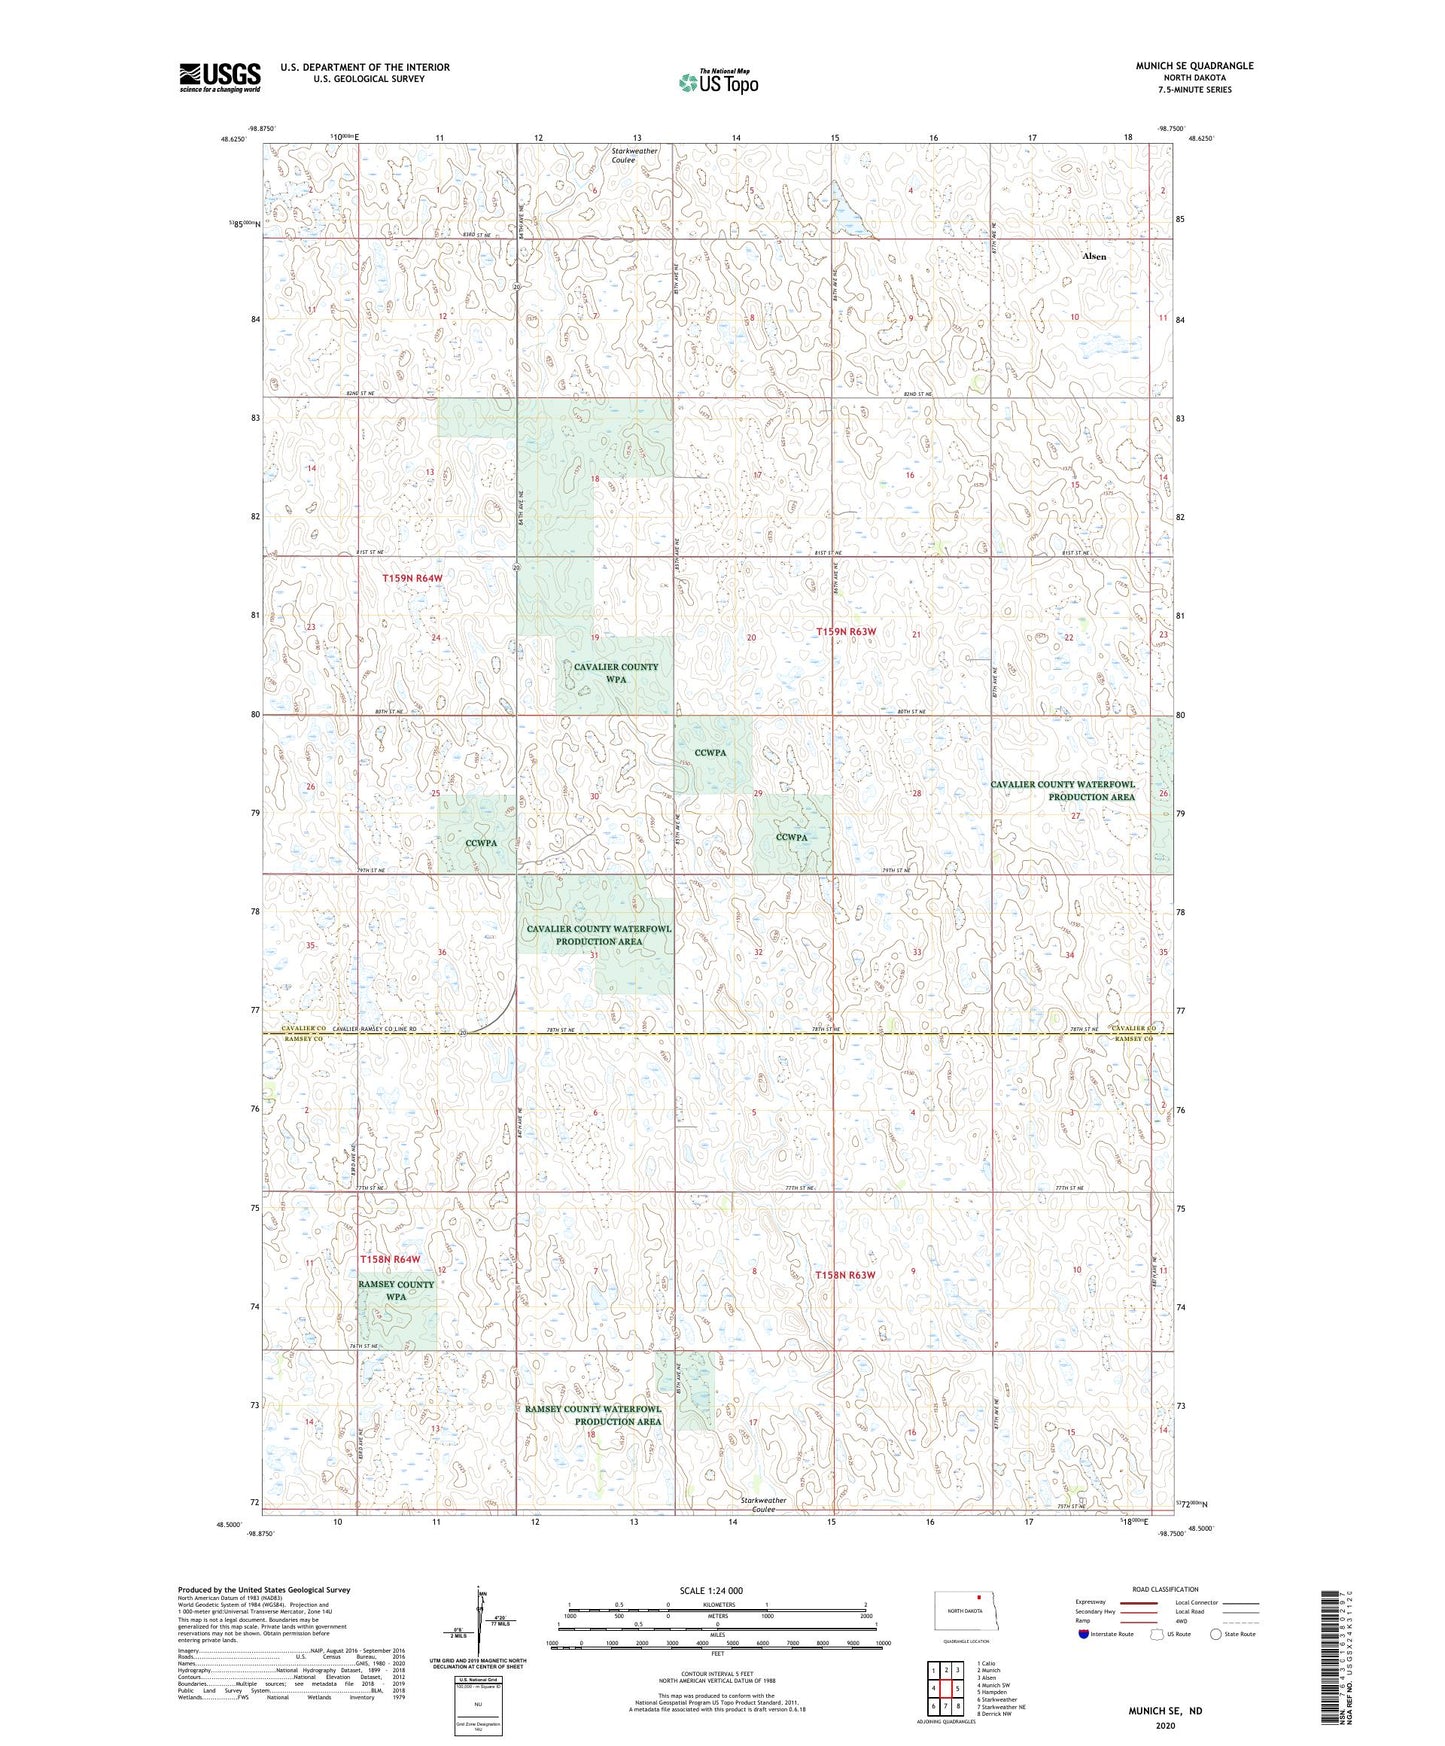 Munich SE North Dakota US Topo Map Image